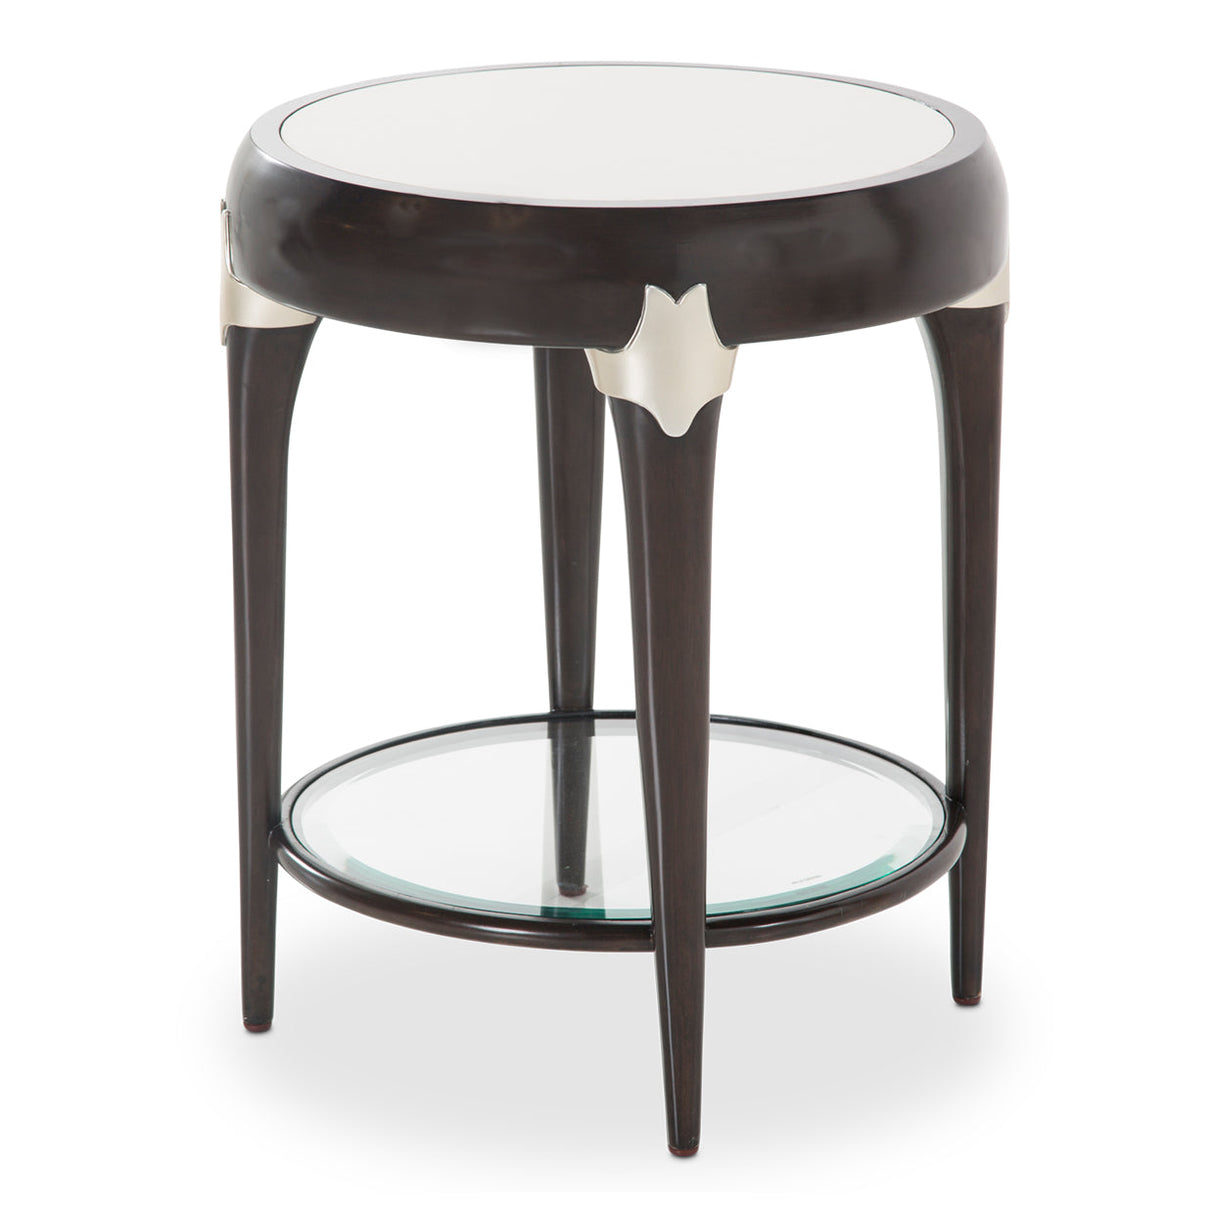 Aico Furniture - Paris Chic Round Accent Table In Espresso - N9003224-409